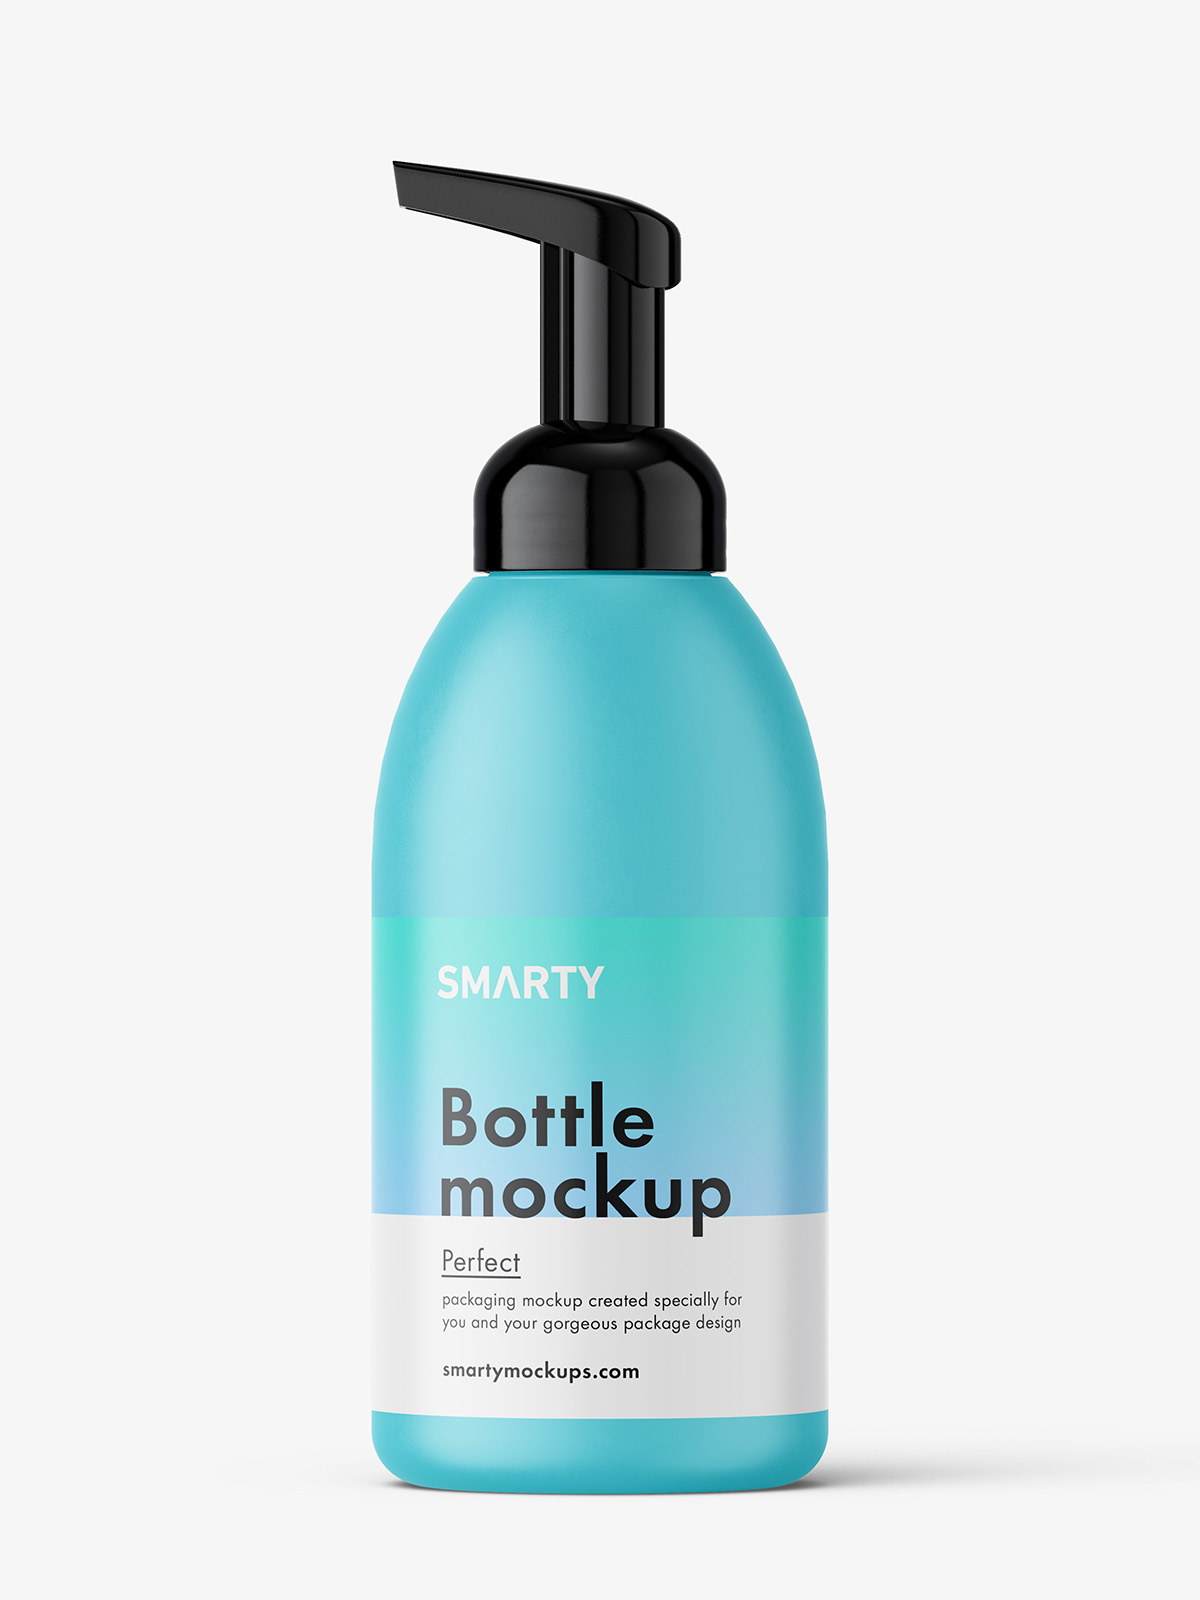 Foam bottle mockup / plastic - Smarty Mockups